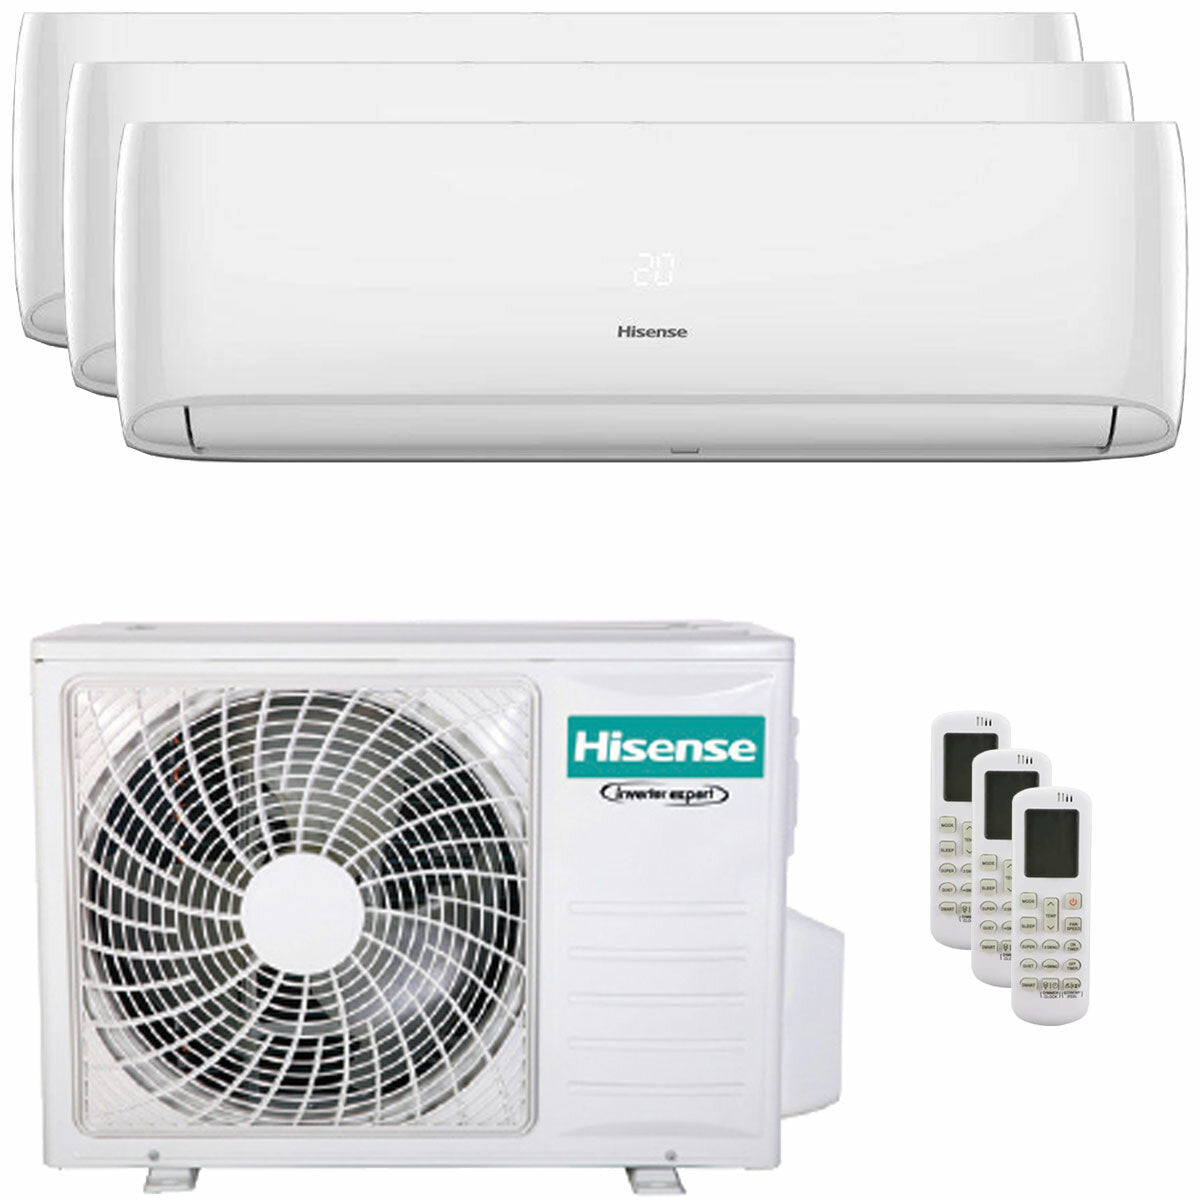 Hisense Hi-Comfort trial climatiseur split 7000+7000+7000 BTU onduleur A++ wifi unité extérieure 5,5 kW